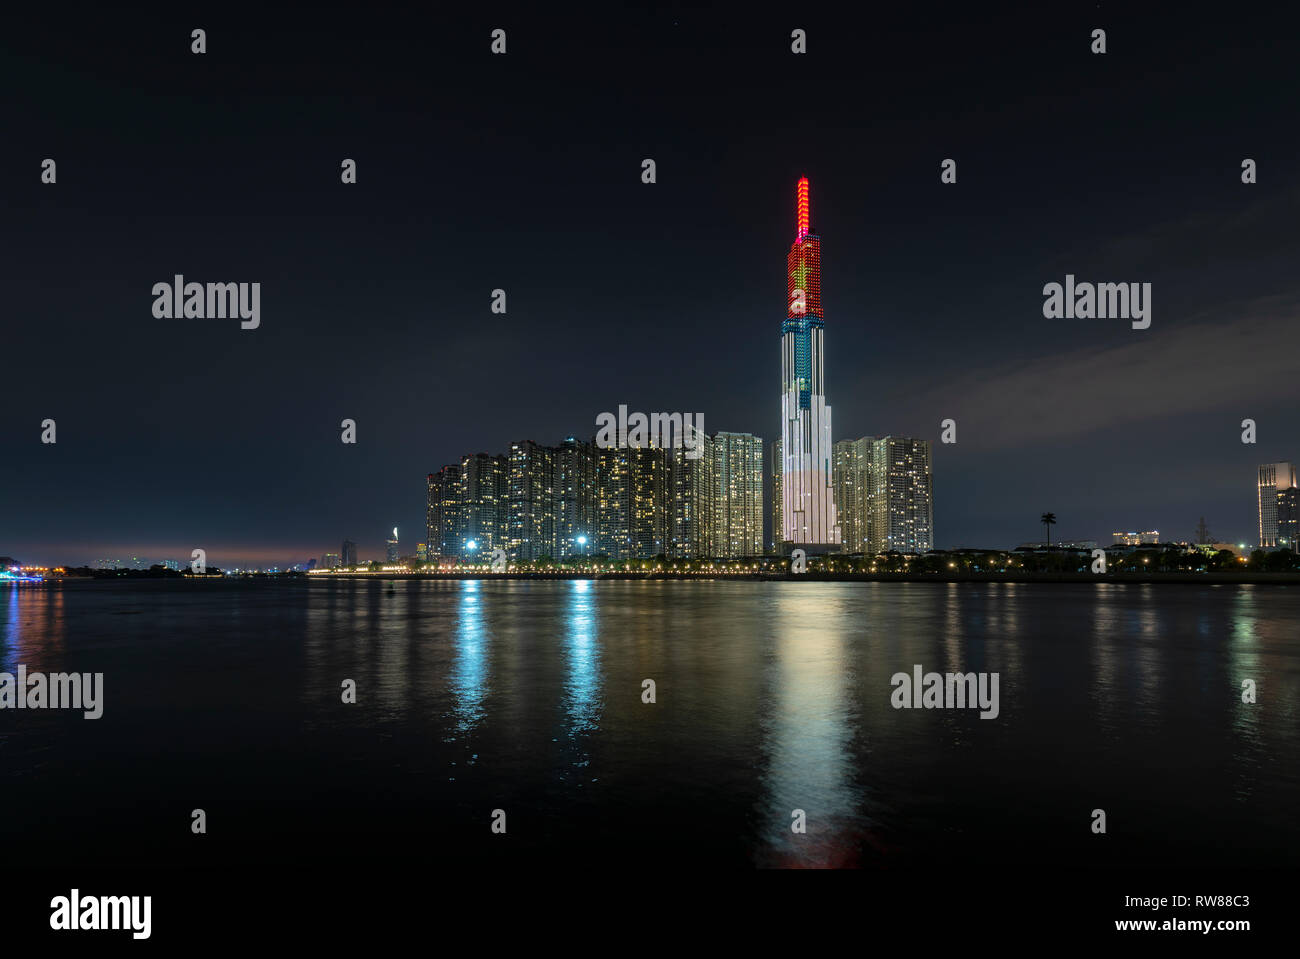 Colorido paisaje arquitectónico de la escena nocturna de rascacielos a lo largo del río con muchas luces brillantes para acoger el Año Nuevo Lunar 2019 Foto de stock